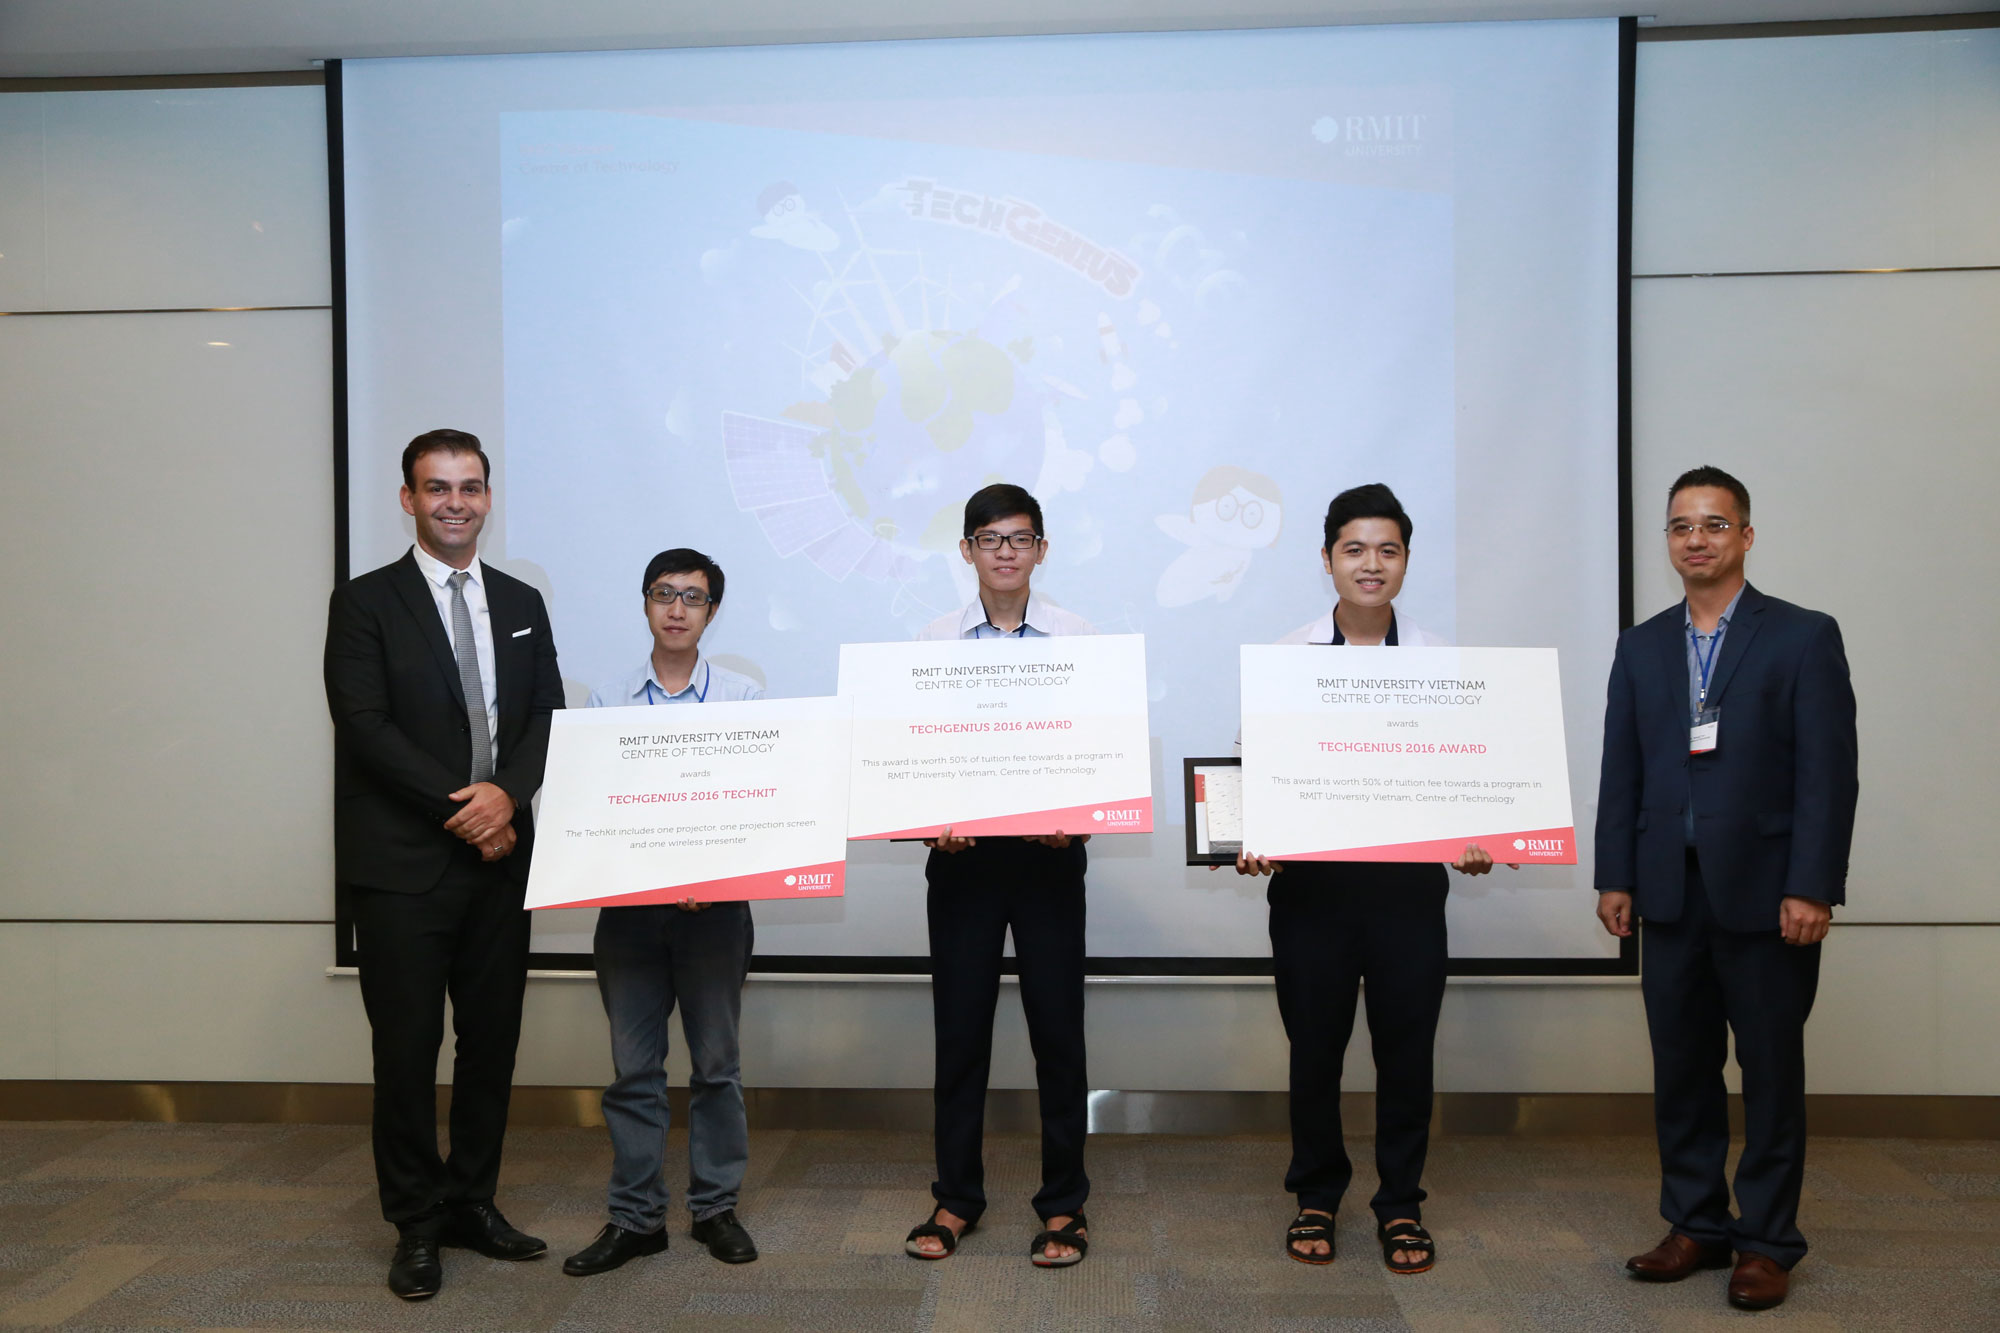  Trưởng khoa Công nghệ Đại học RMIT Việt Nam Giáo sư Alex Stojcevski (bìa trái) trao giải Nhất cho thành viên đội chiến thắng đến từ trường THPT Gia Định.